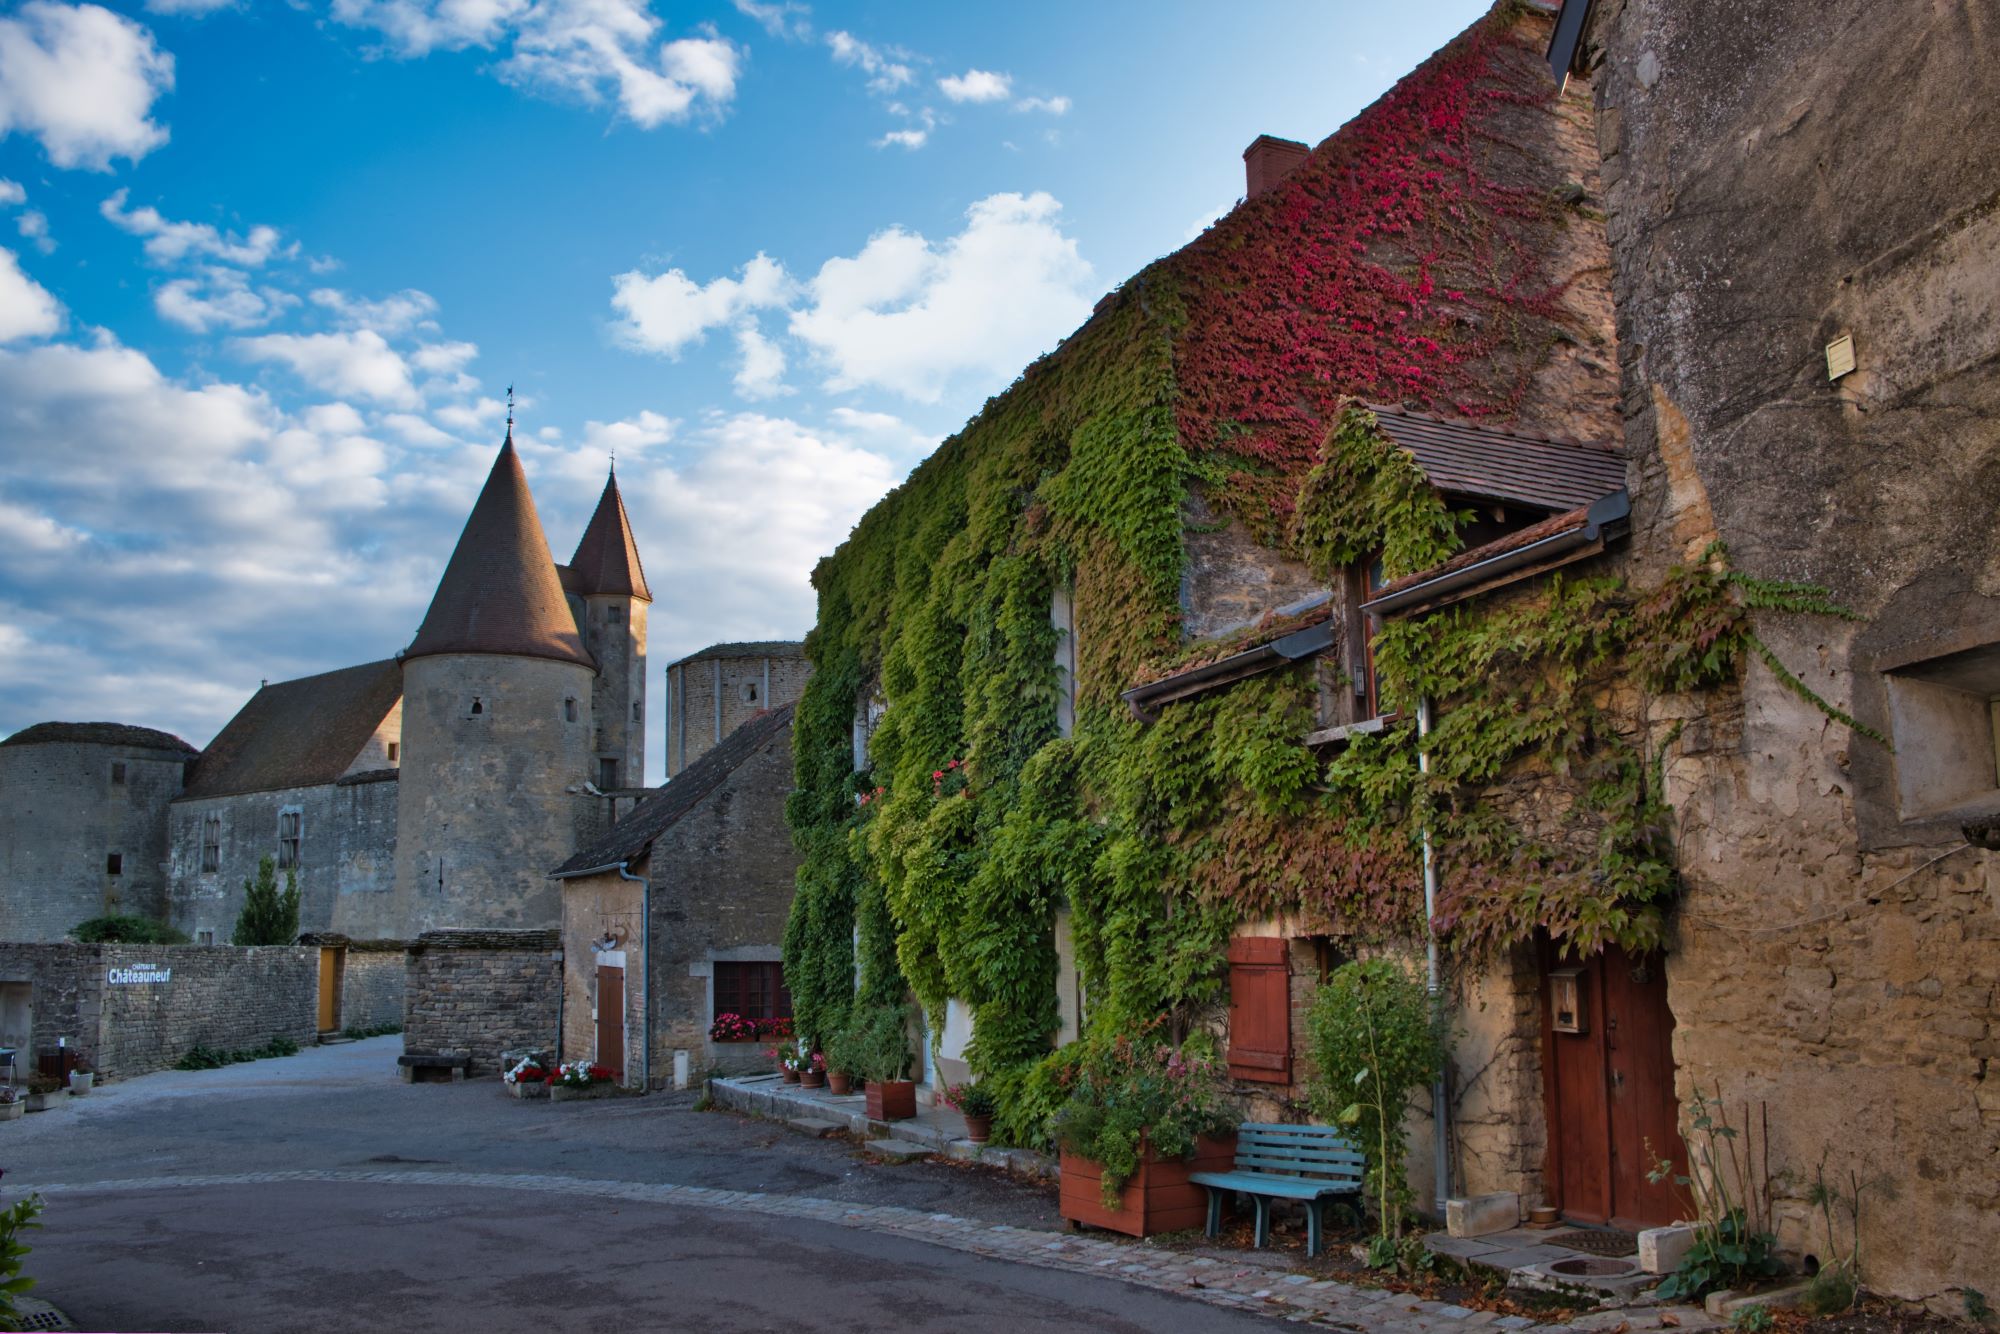 Замки, аббатства и шато. Аутентичные исторические городки и деревни Франции, где словно попадаешь в прошлое